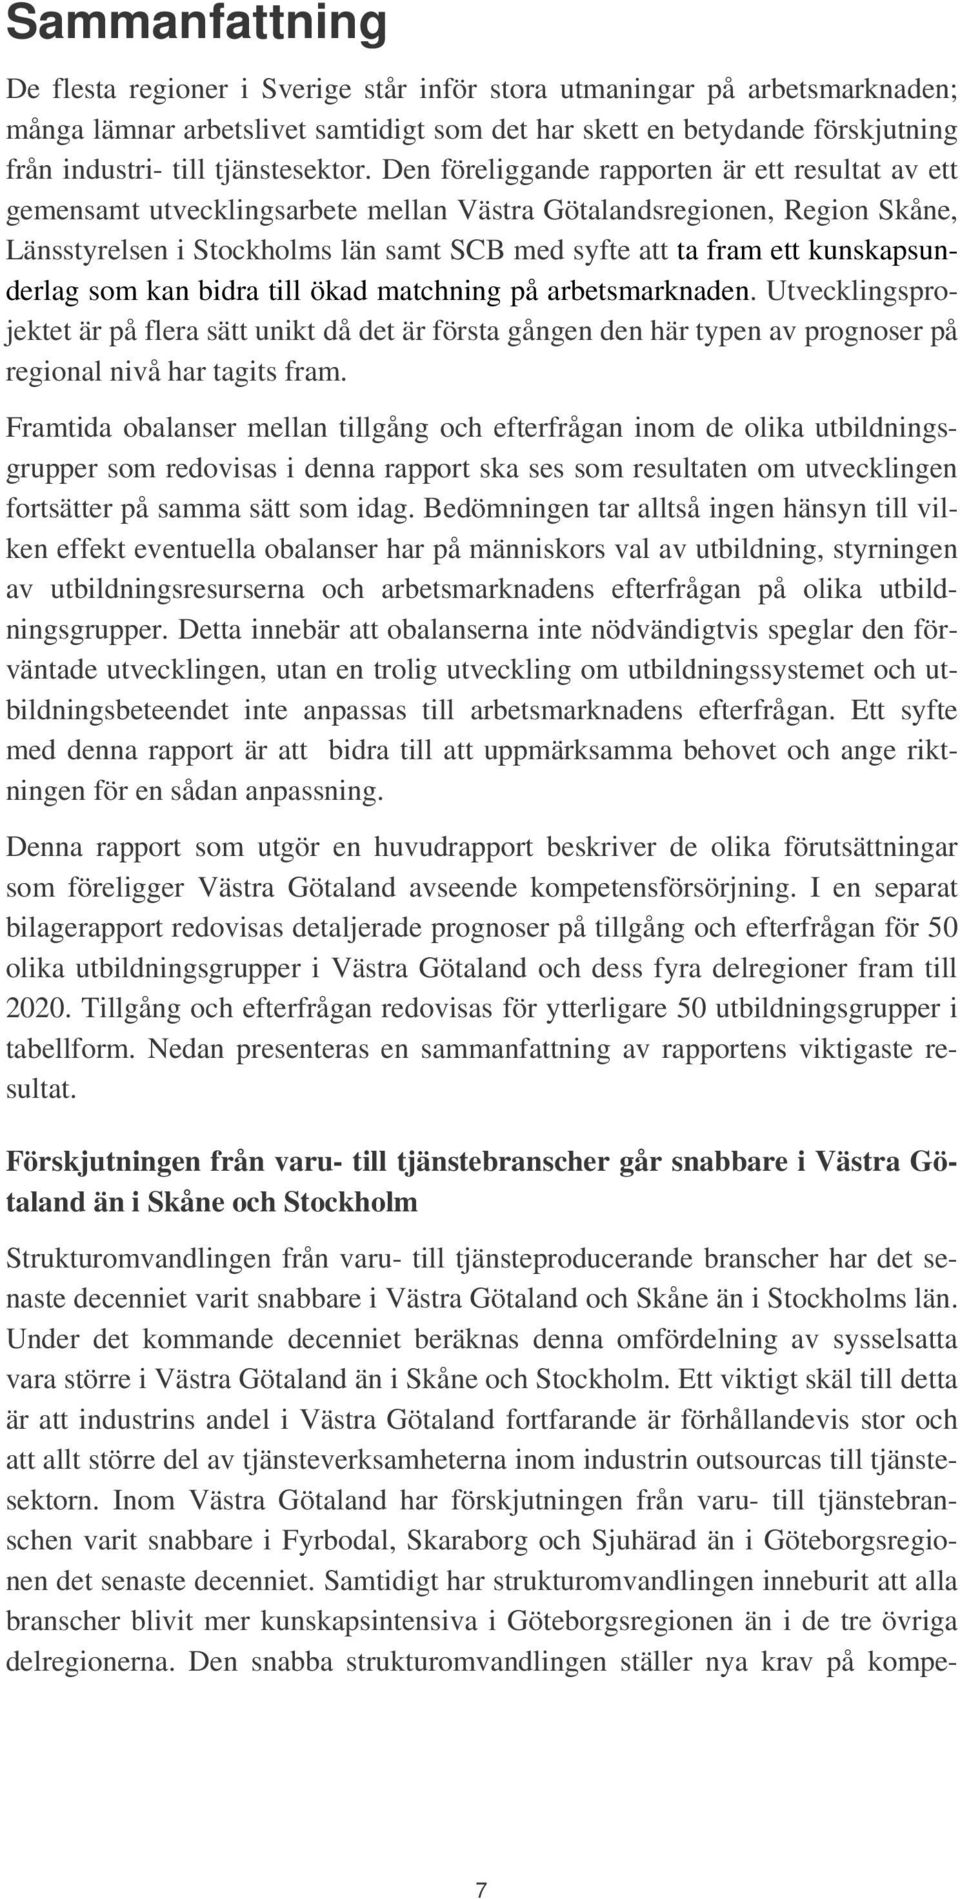 Den föreliggande rapporten är ett resultat av ett gemensamt utvecklingsarbete mellan Västra Götalandsregionen, Region Skåne, Länsstyrelsen i Stockholms län samt SCB med syfte att ta fram ett